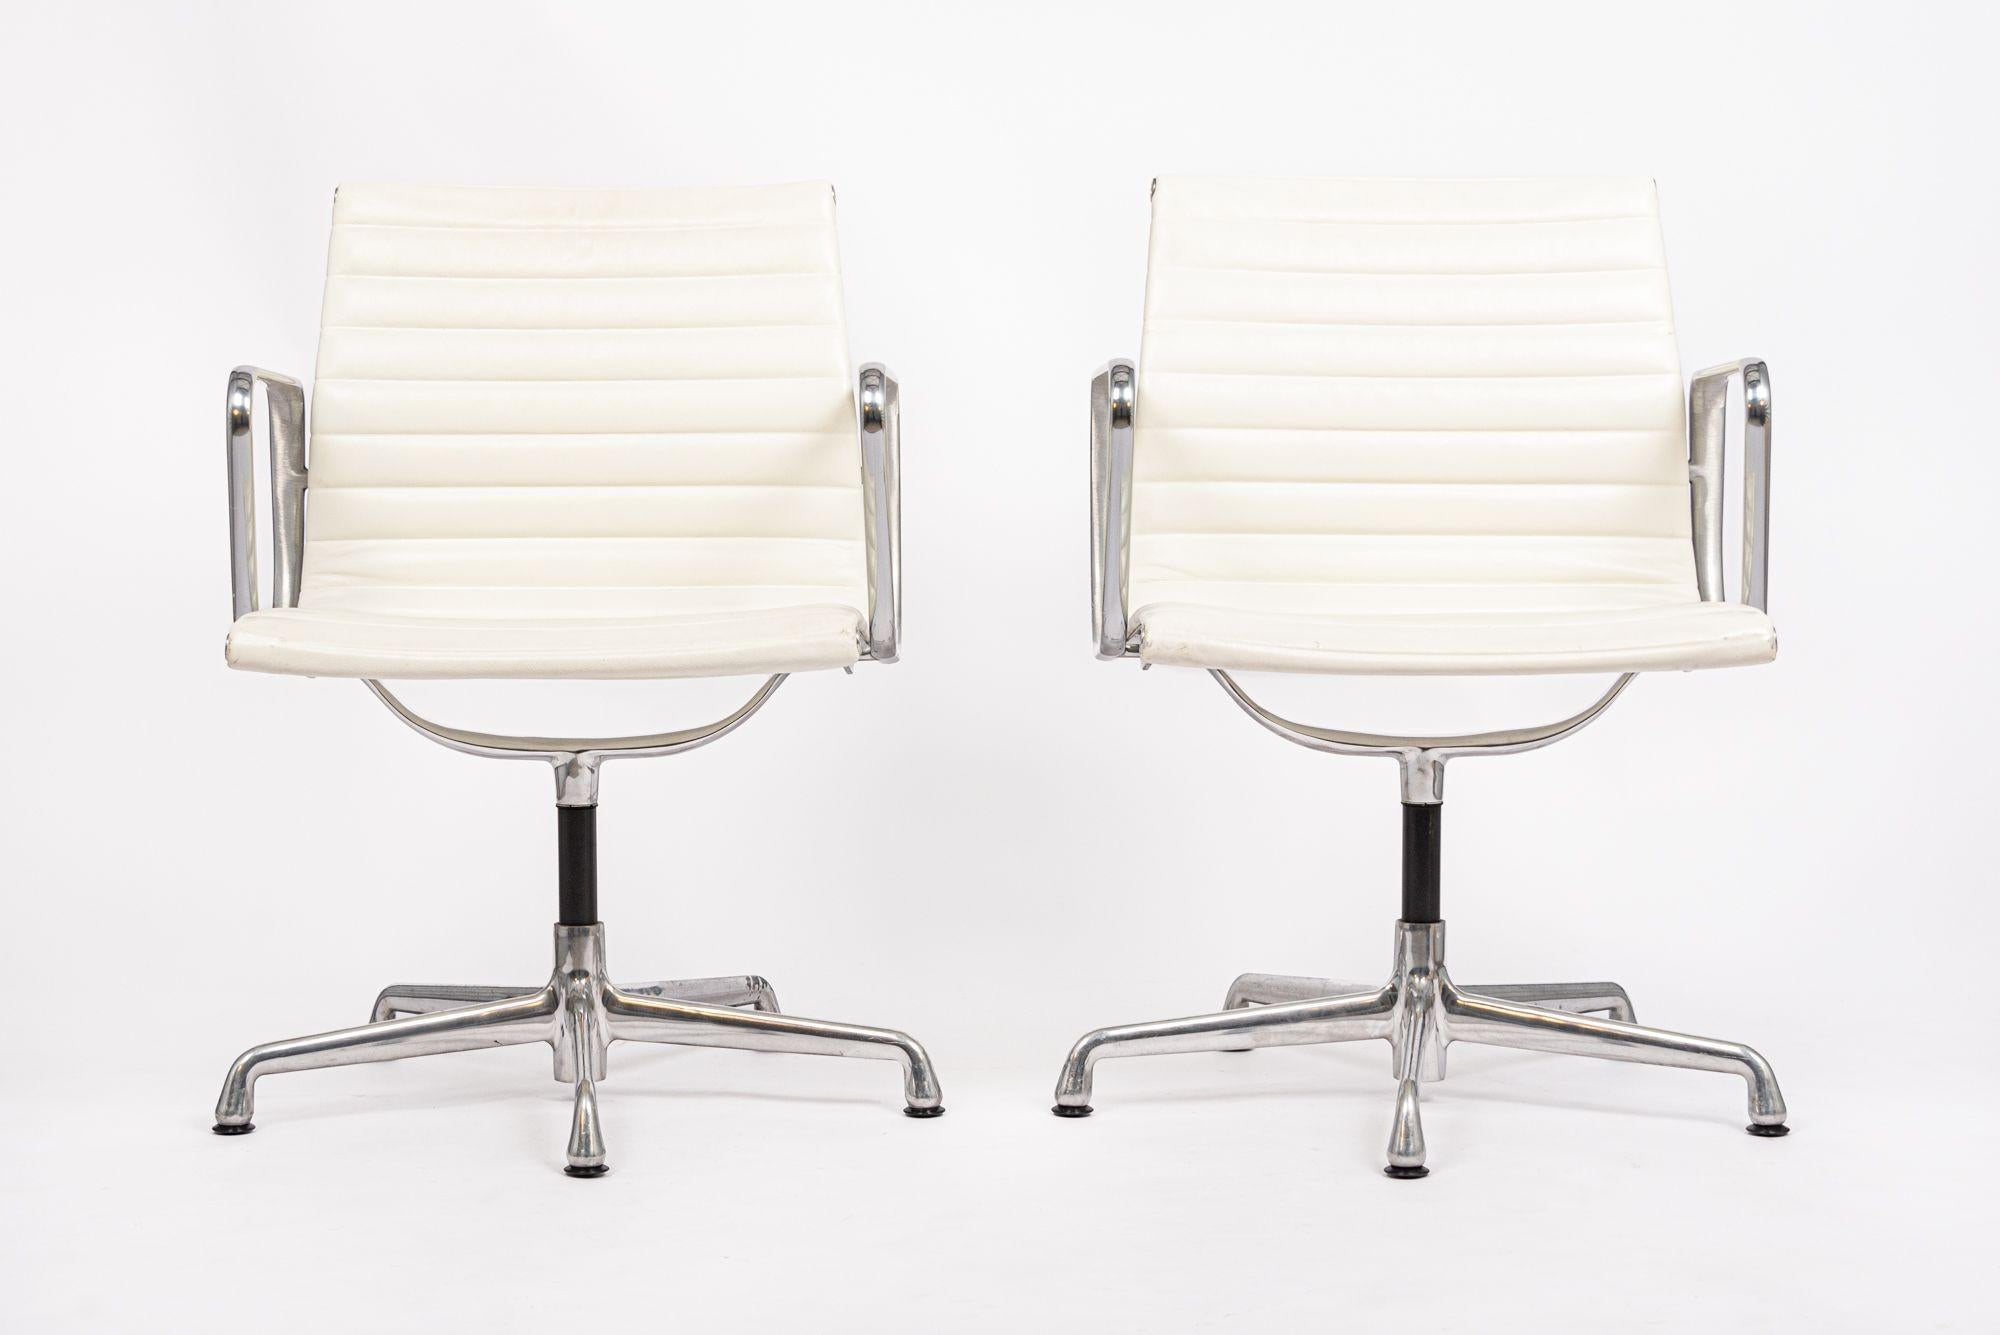 Le fauteuil de bureau Aluminum Group Management, conçu par Charles & Ray Eames pour Herman Miller, fait partie de la Collection Aluminum Group des Eames. Ces chaises originales sont le fruit de l'expérimentation des Eames avec l'aluminium, qui est